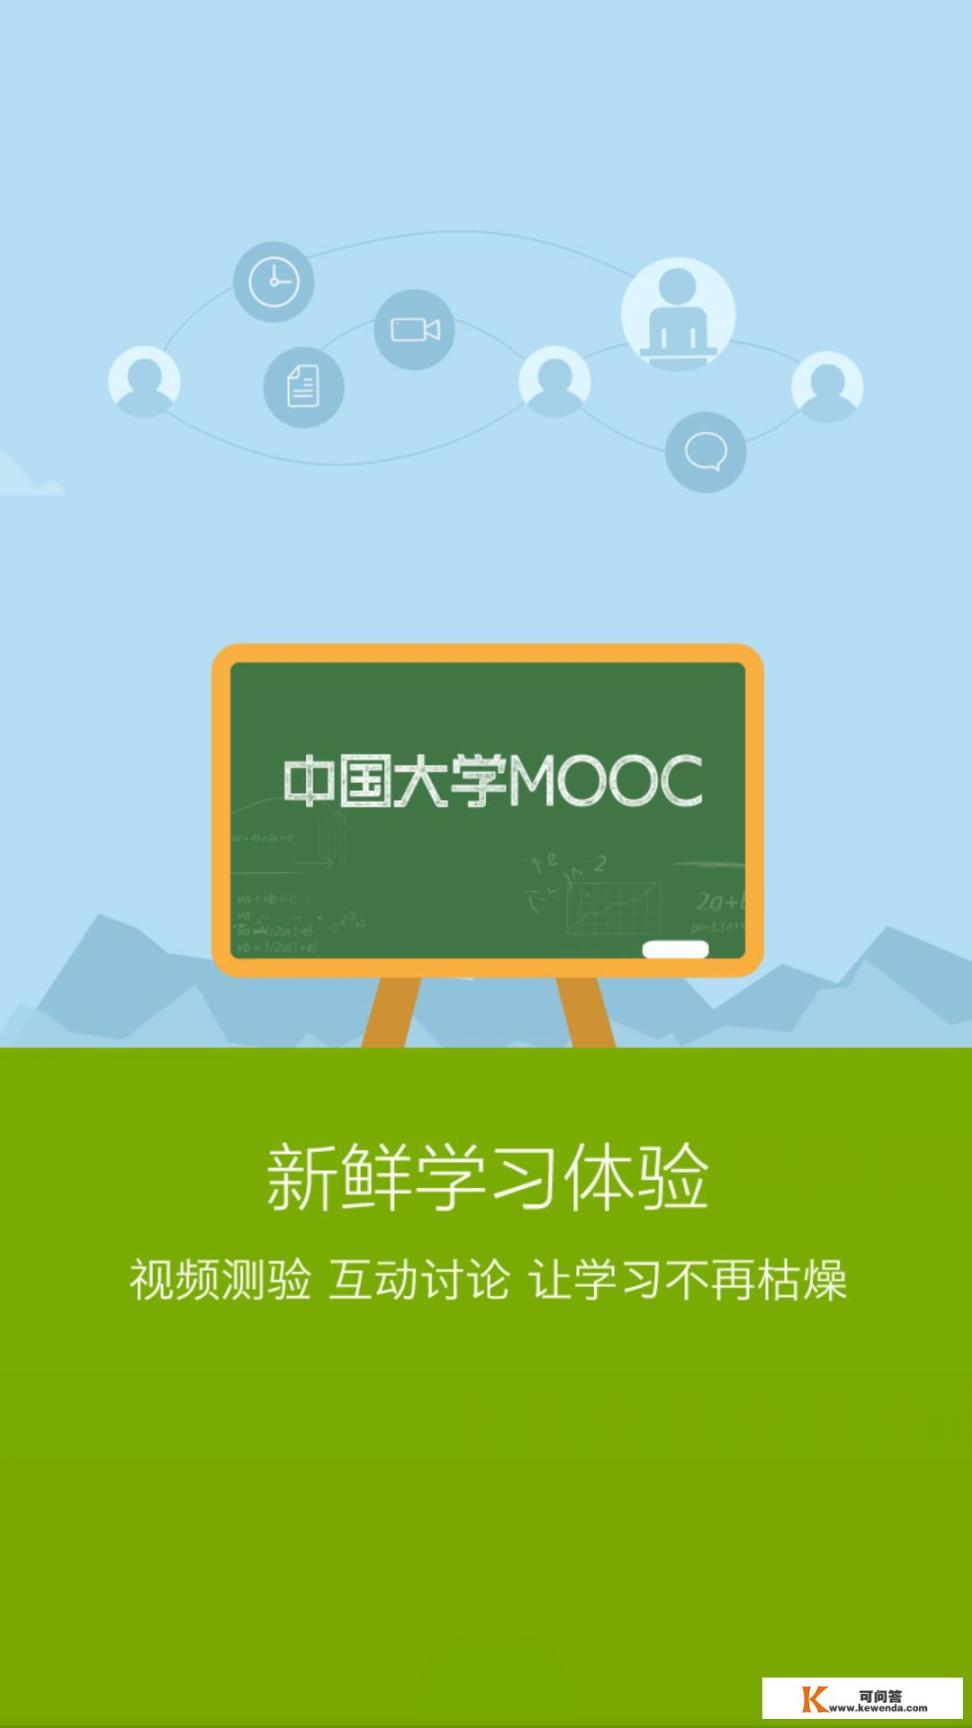 怎么看中国大学MOOC平台